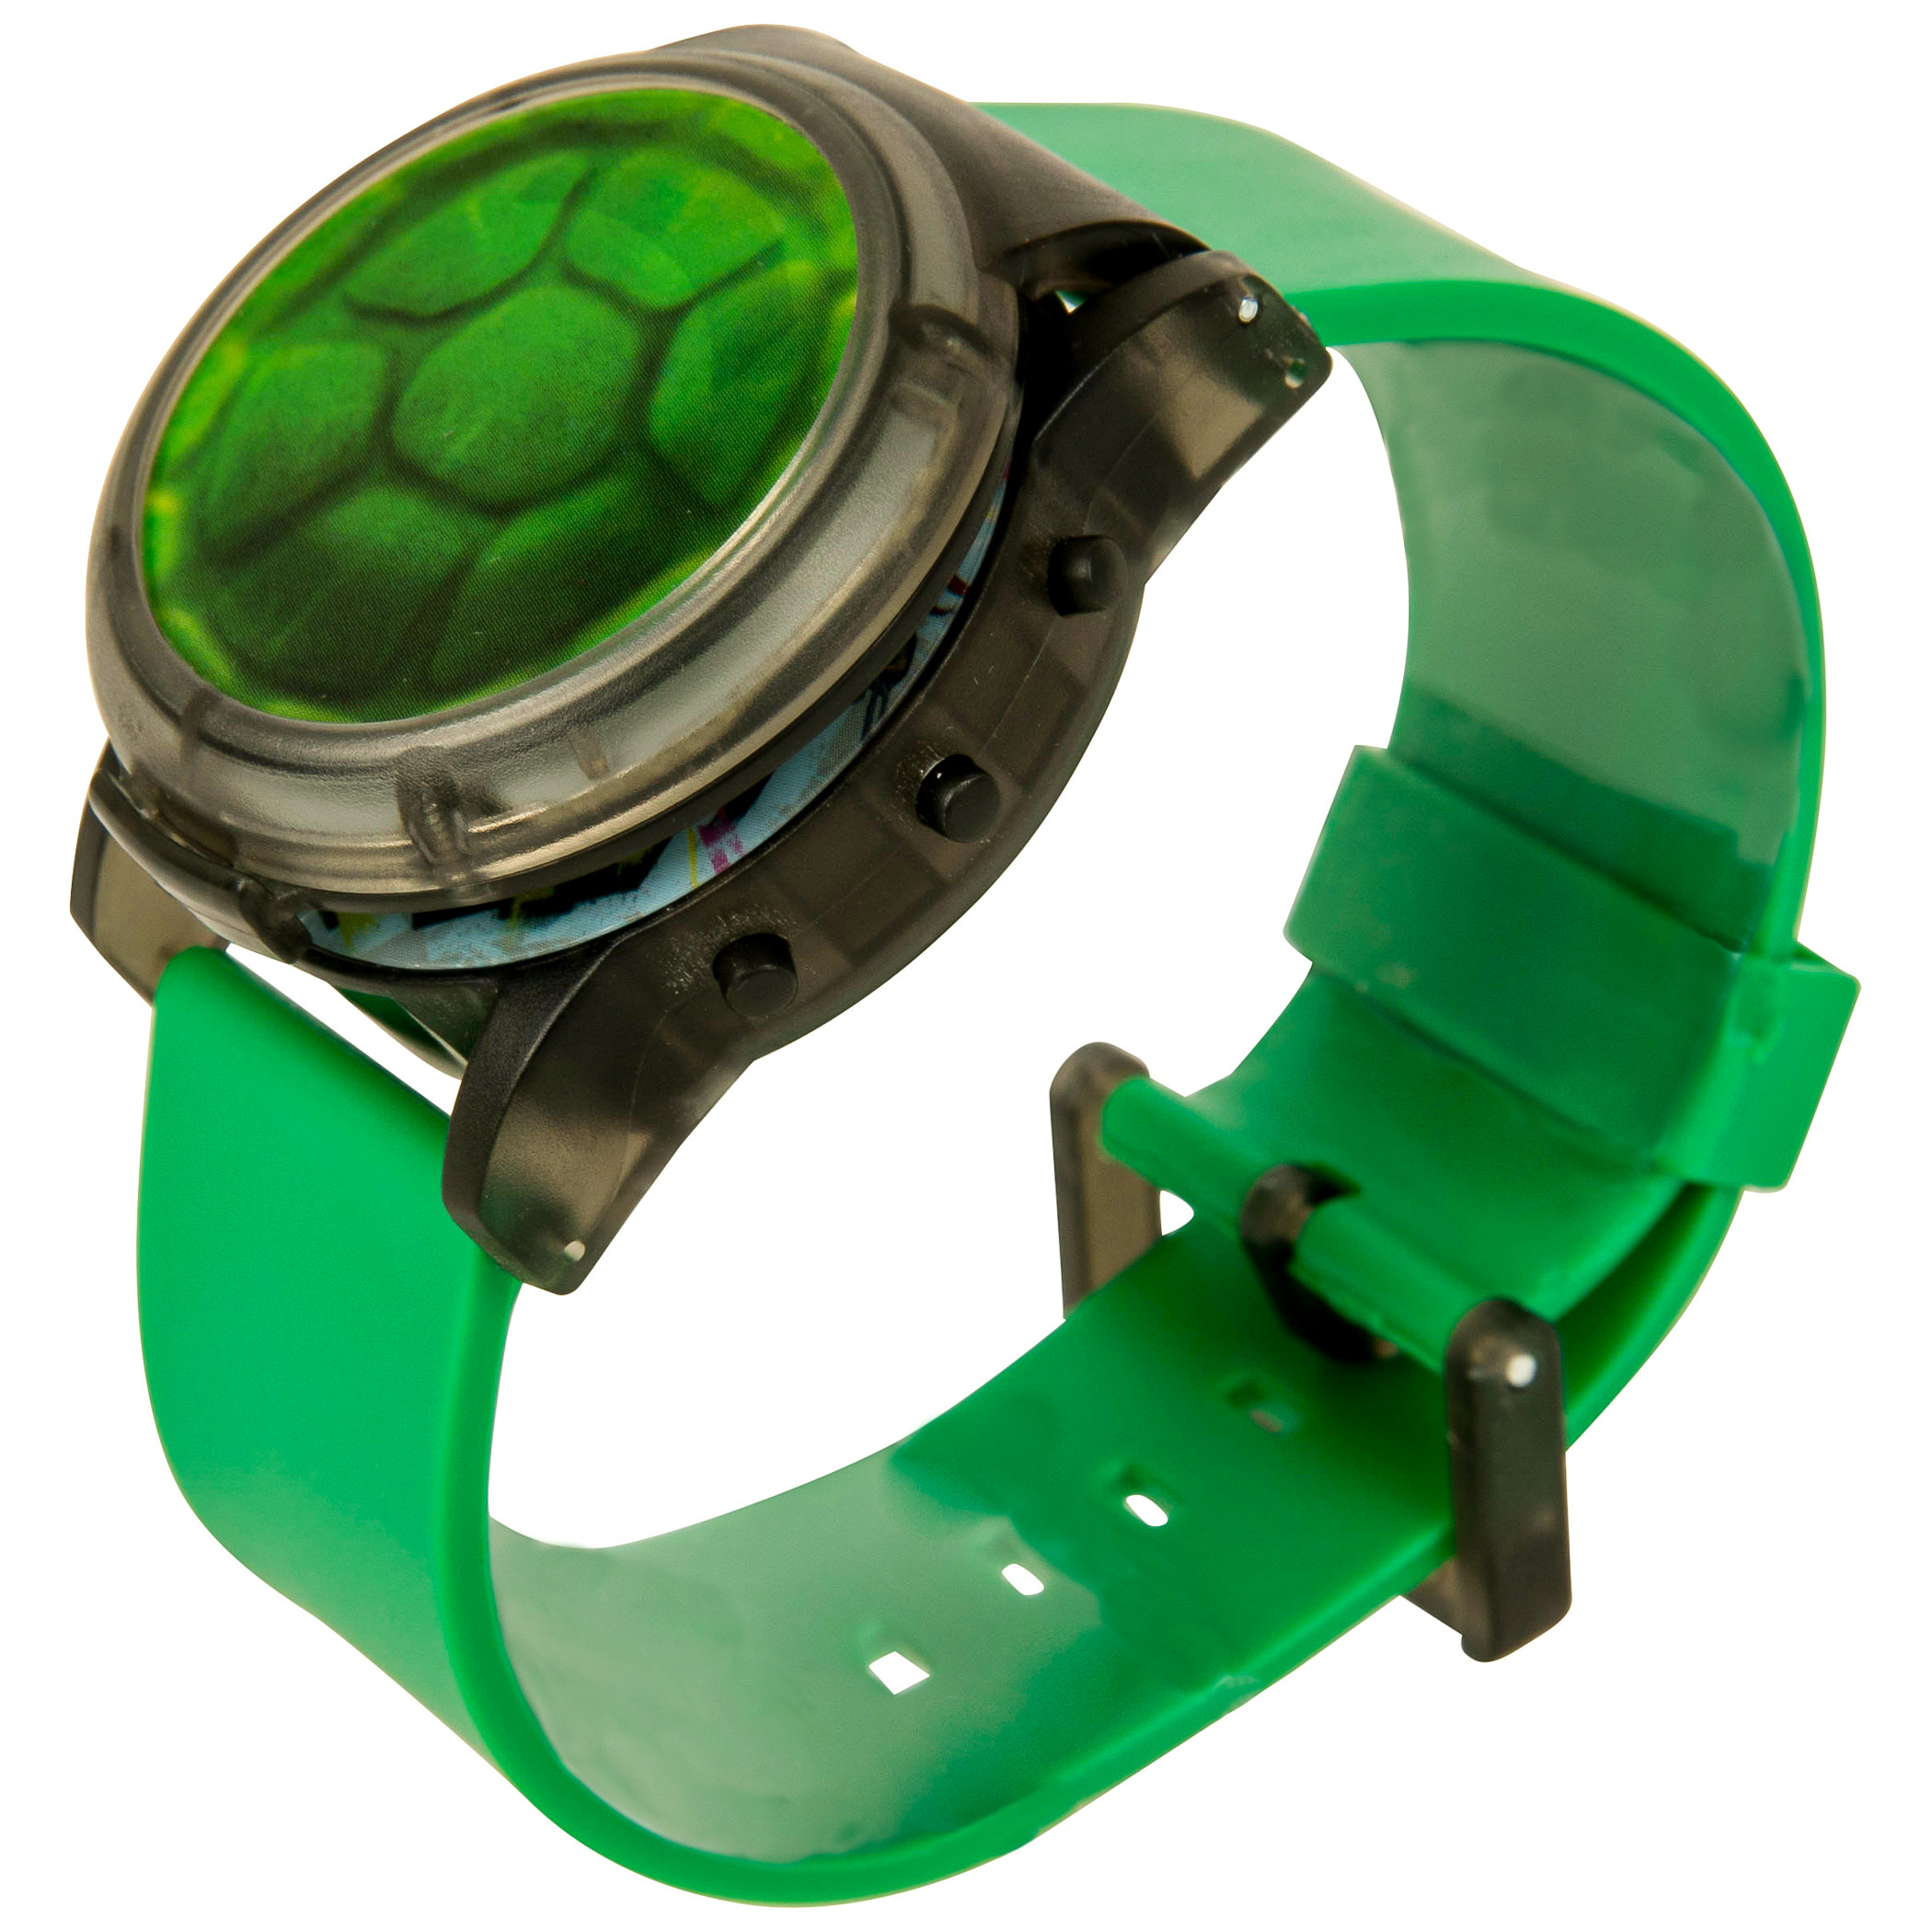 ben 10 alien force omnitrix digital watch